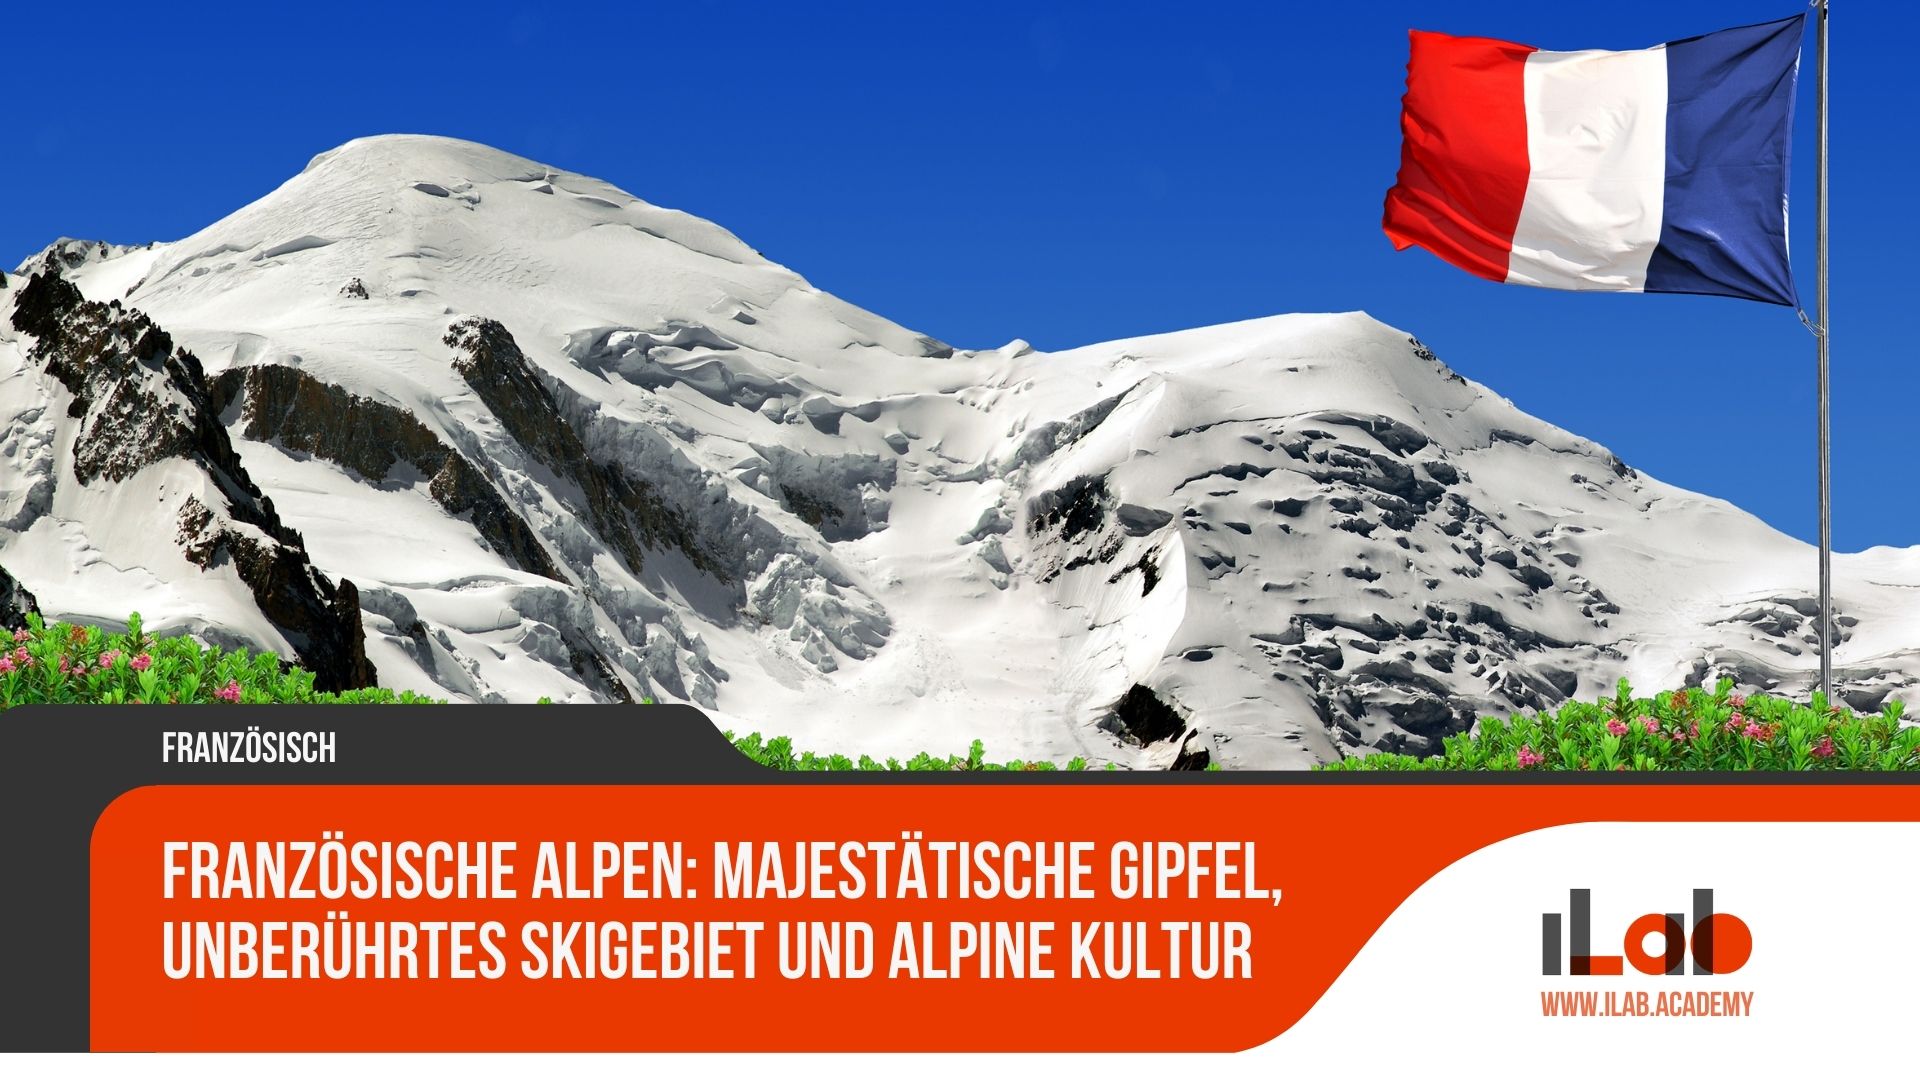 Französische Alpen: Majestätische Gipfel, unberührtes Skigebiet und alpine Kultur